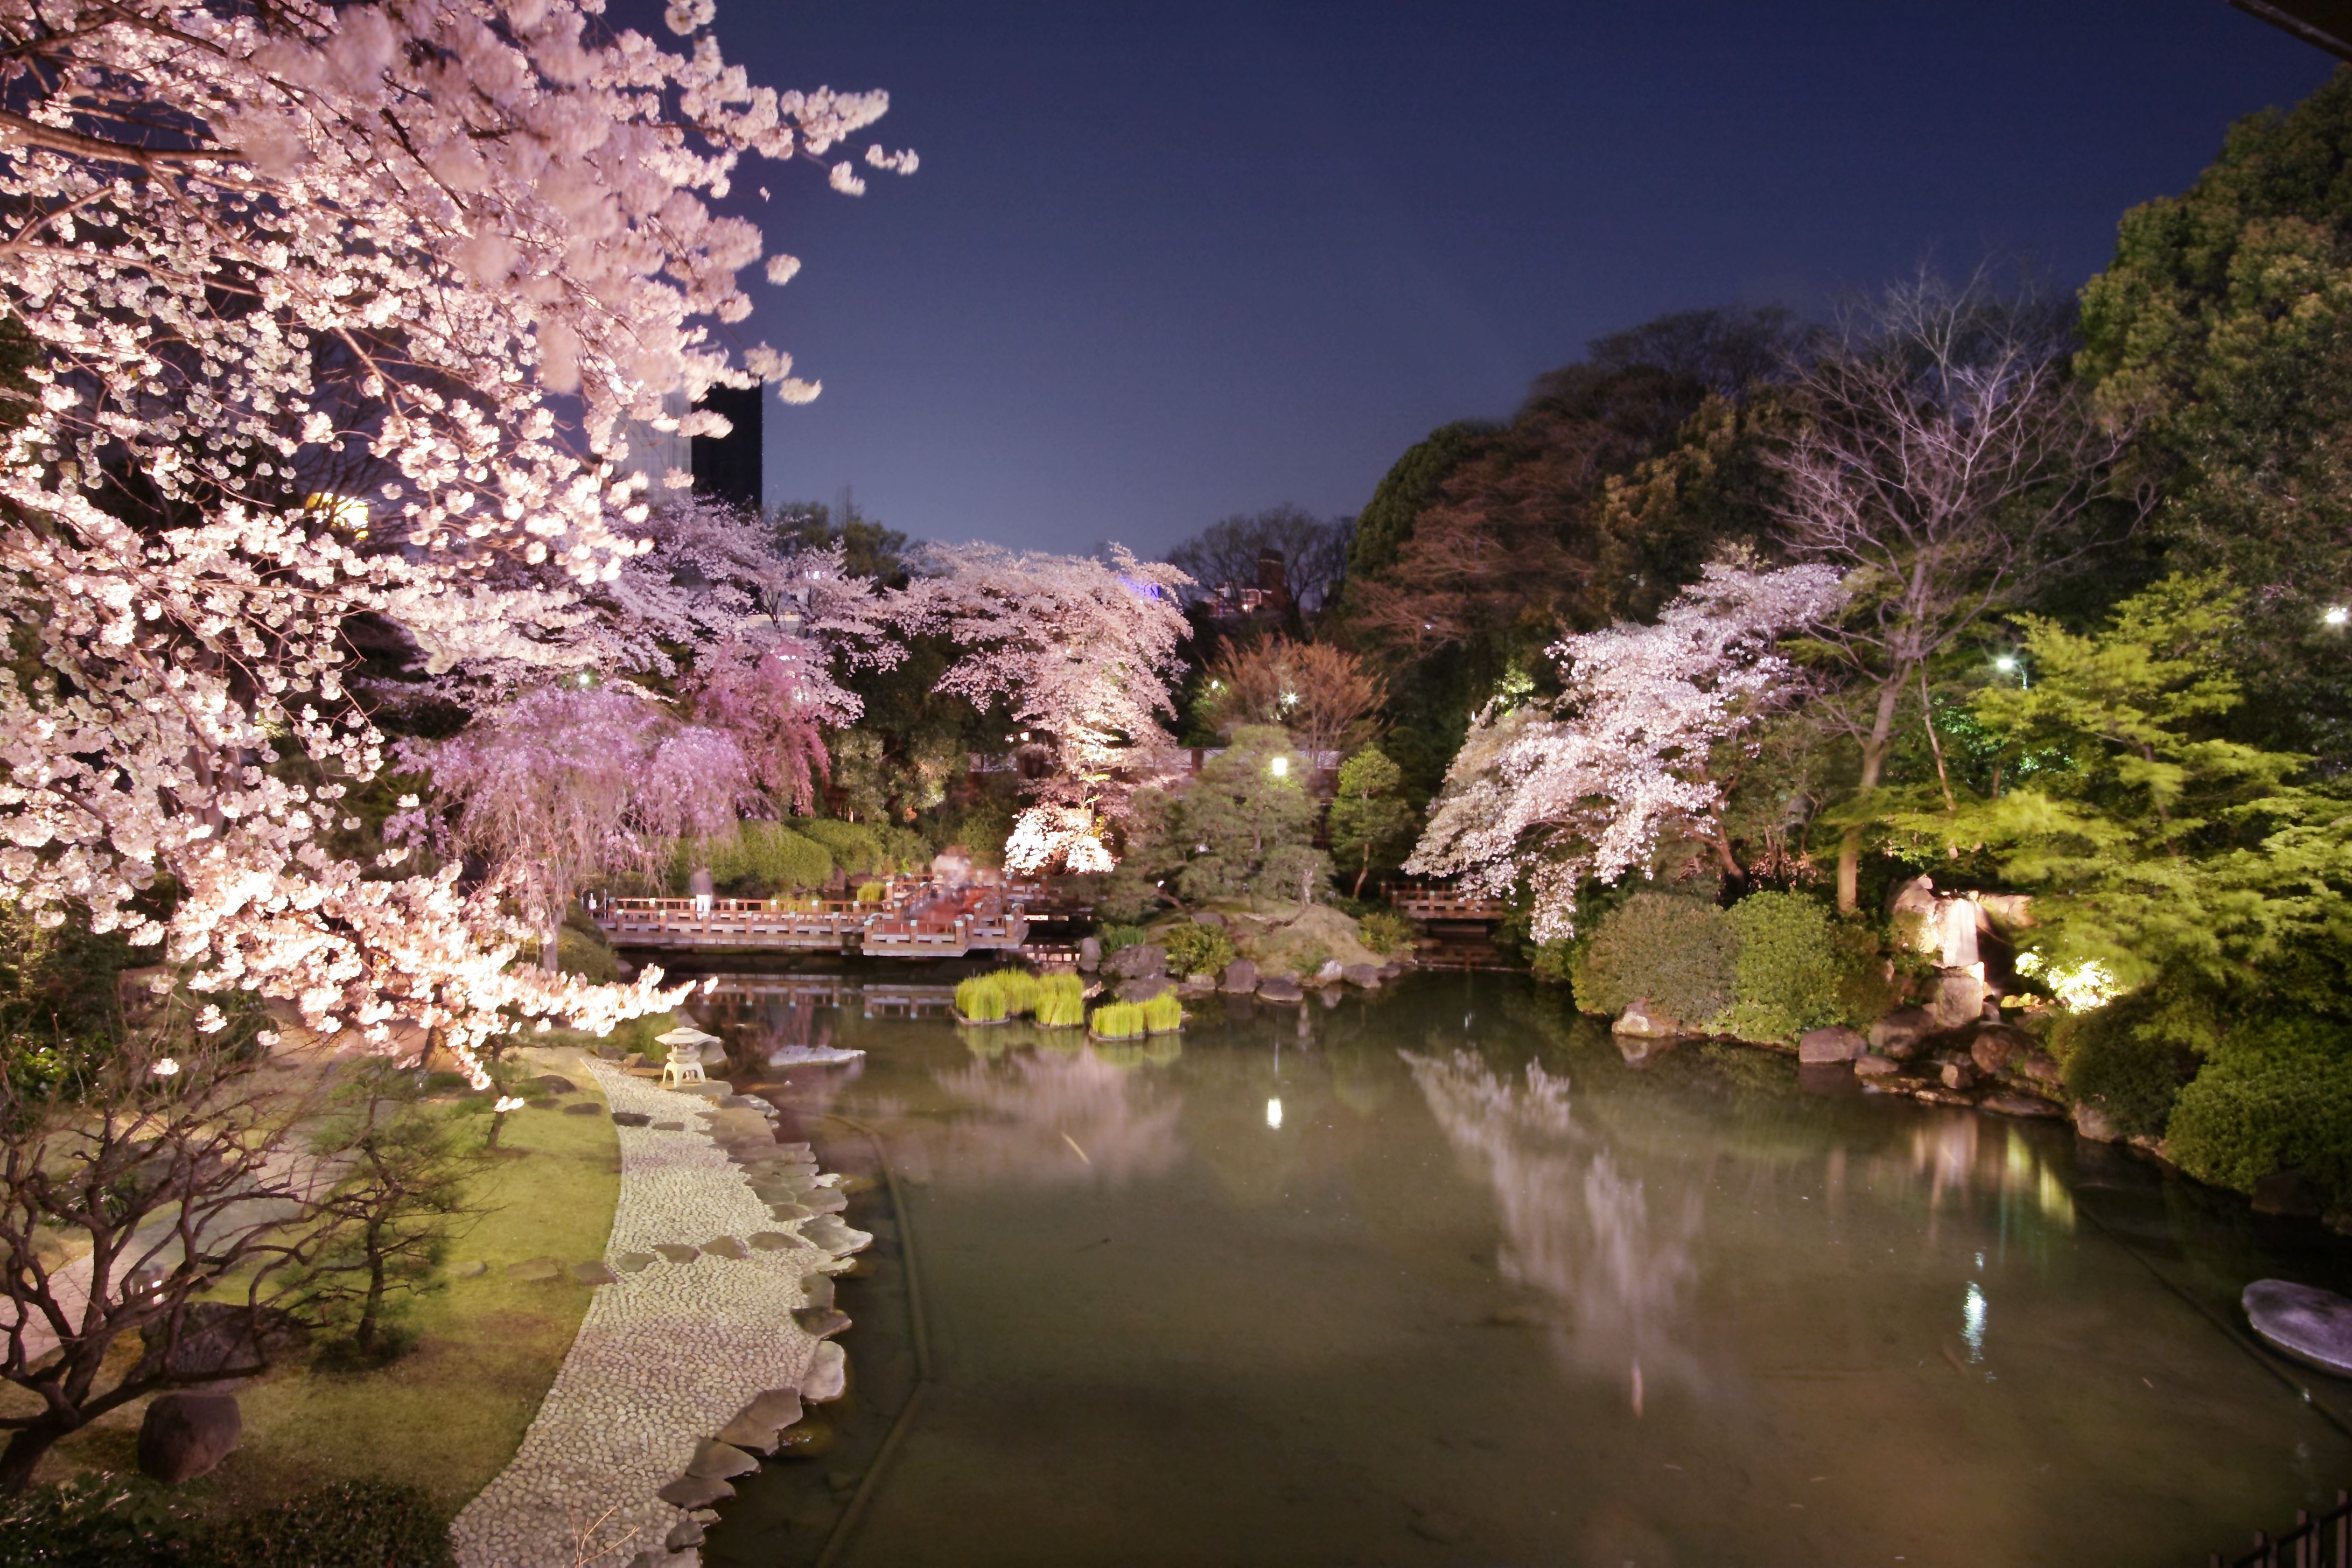 大人のお花見レストラン 神楽 原宿に3月26日オープン 桜が一面に広がる日本庭園が 非日常 を演出 株式会社東日のプレスリリース